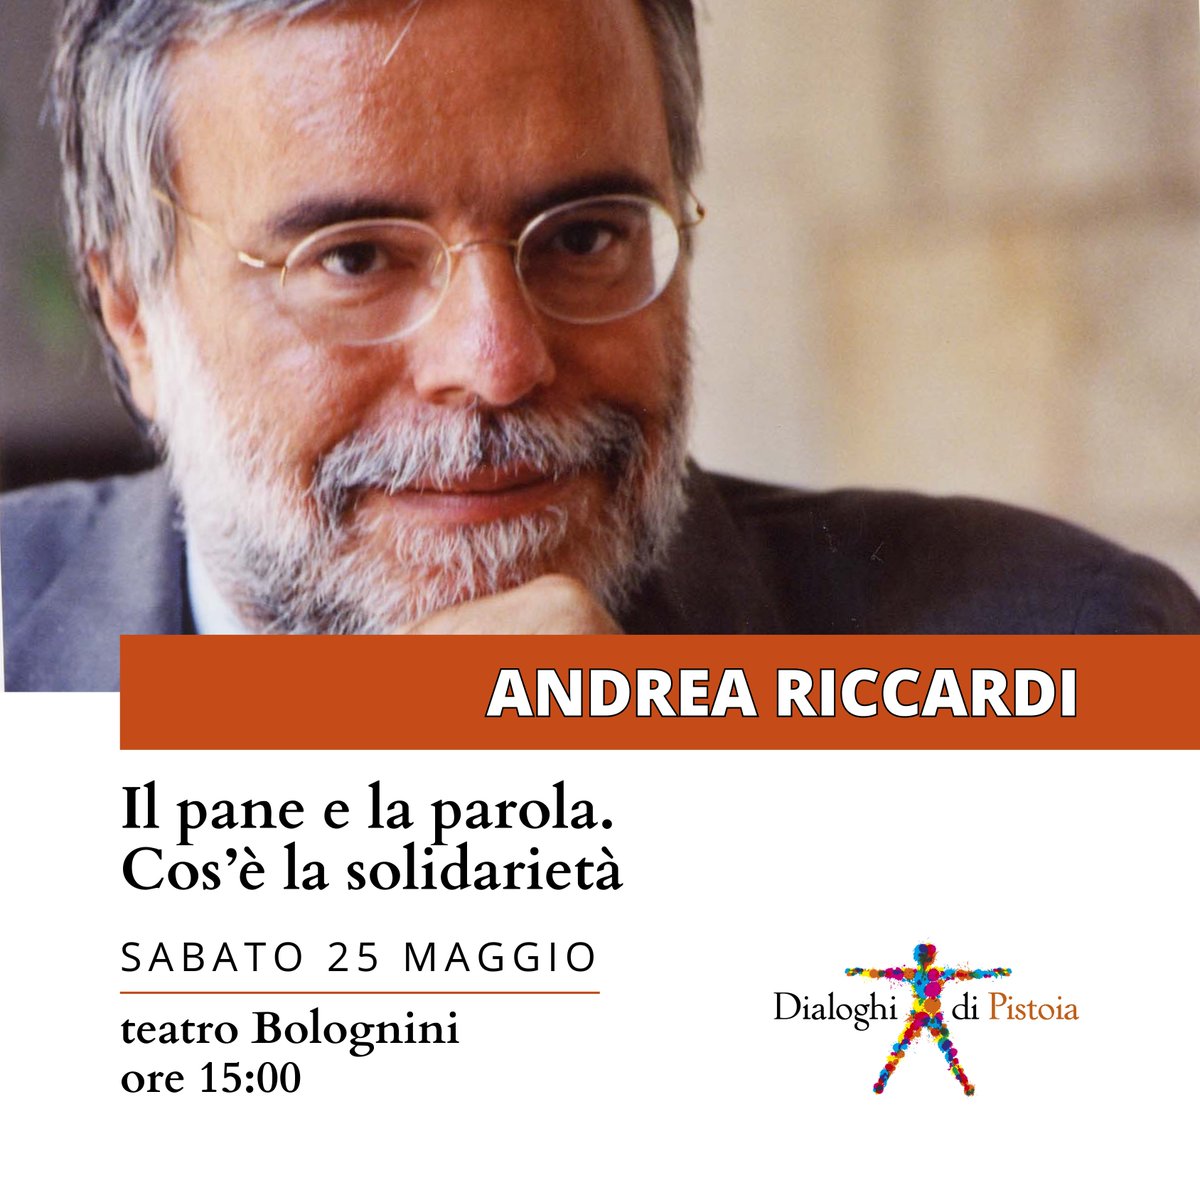 [Andrea Riccardi] Il pane e la parola. Cos’è la solidarietà 🗓 sabato 25 maggio, ore 15:00 📍 teatro Bolognini, Pistoia 🔖 info e biglietti: bit.ly/3wd0V9q #DialoghiPistoia @FondCaript @Comune_Pistoia